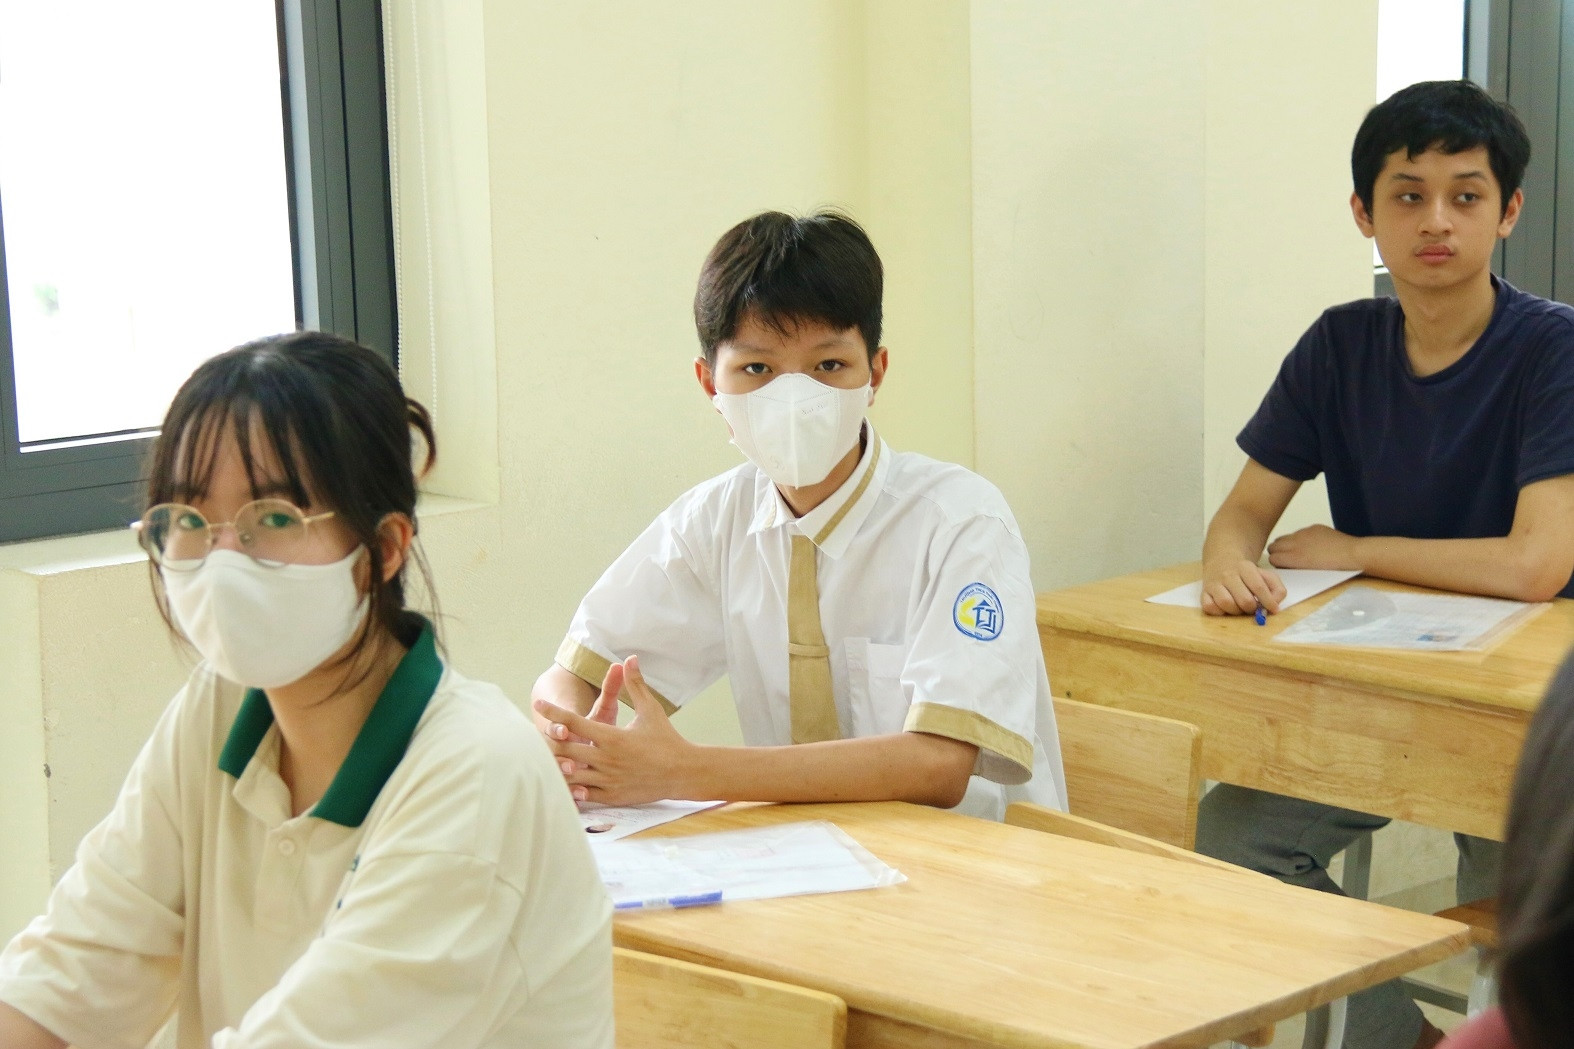 6 thí sinh bị đình chỉ sau 2 ngày thi lớp 10 ở Hà Nội